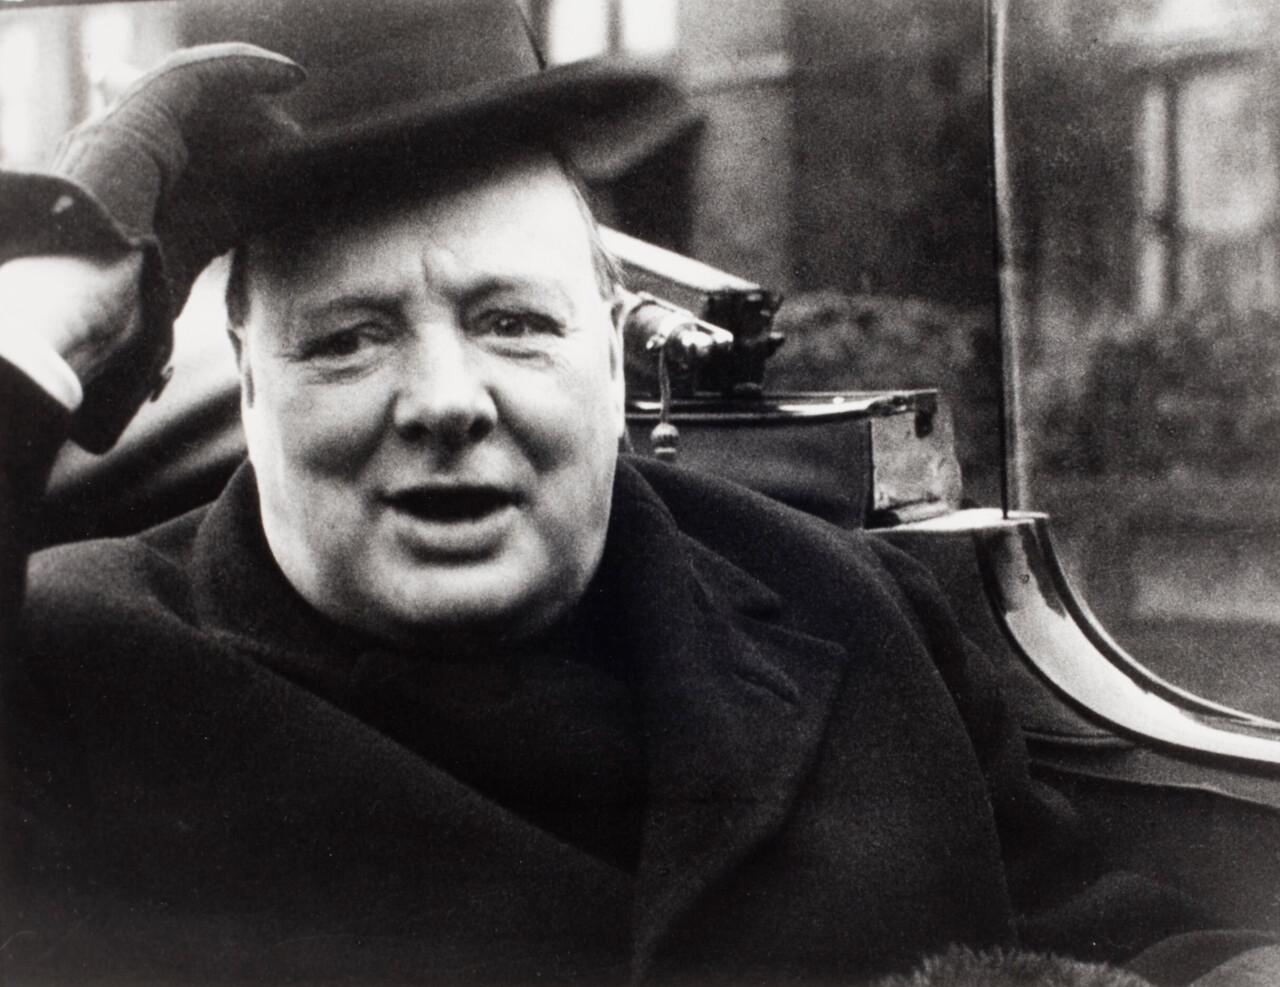 Уинстон Черчилль узнает о своем переизбрании в парламент, 1935 г. Фотограф Люсьен Айгнер